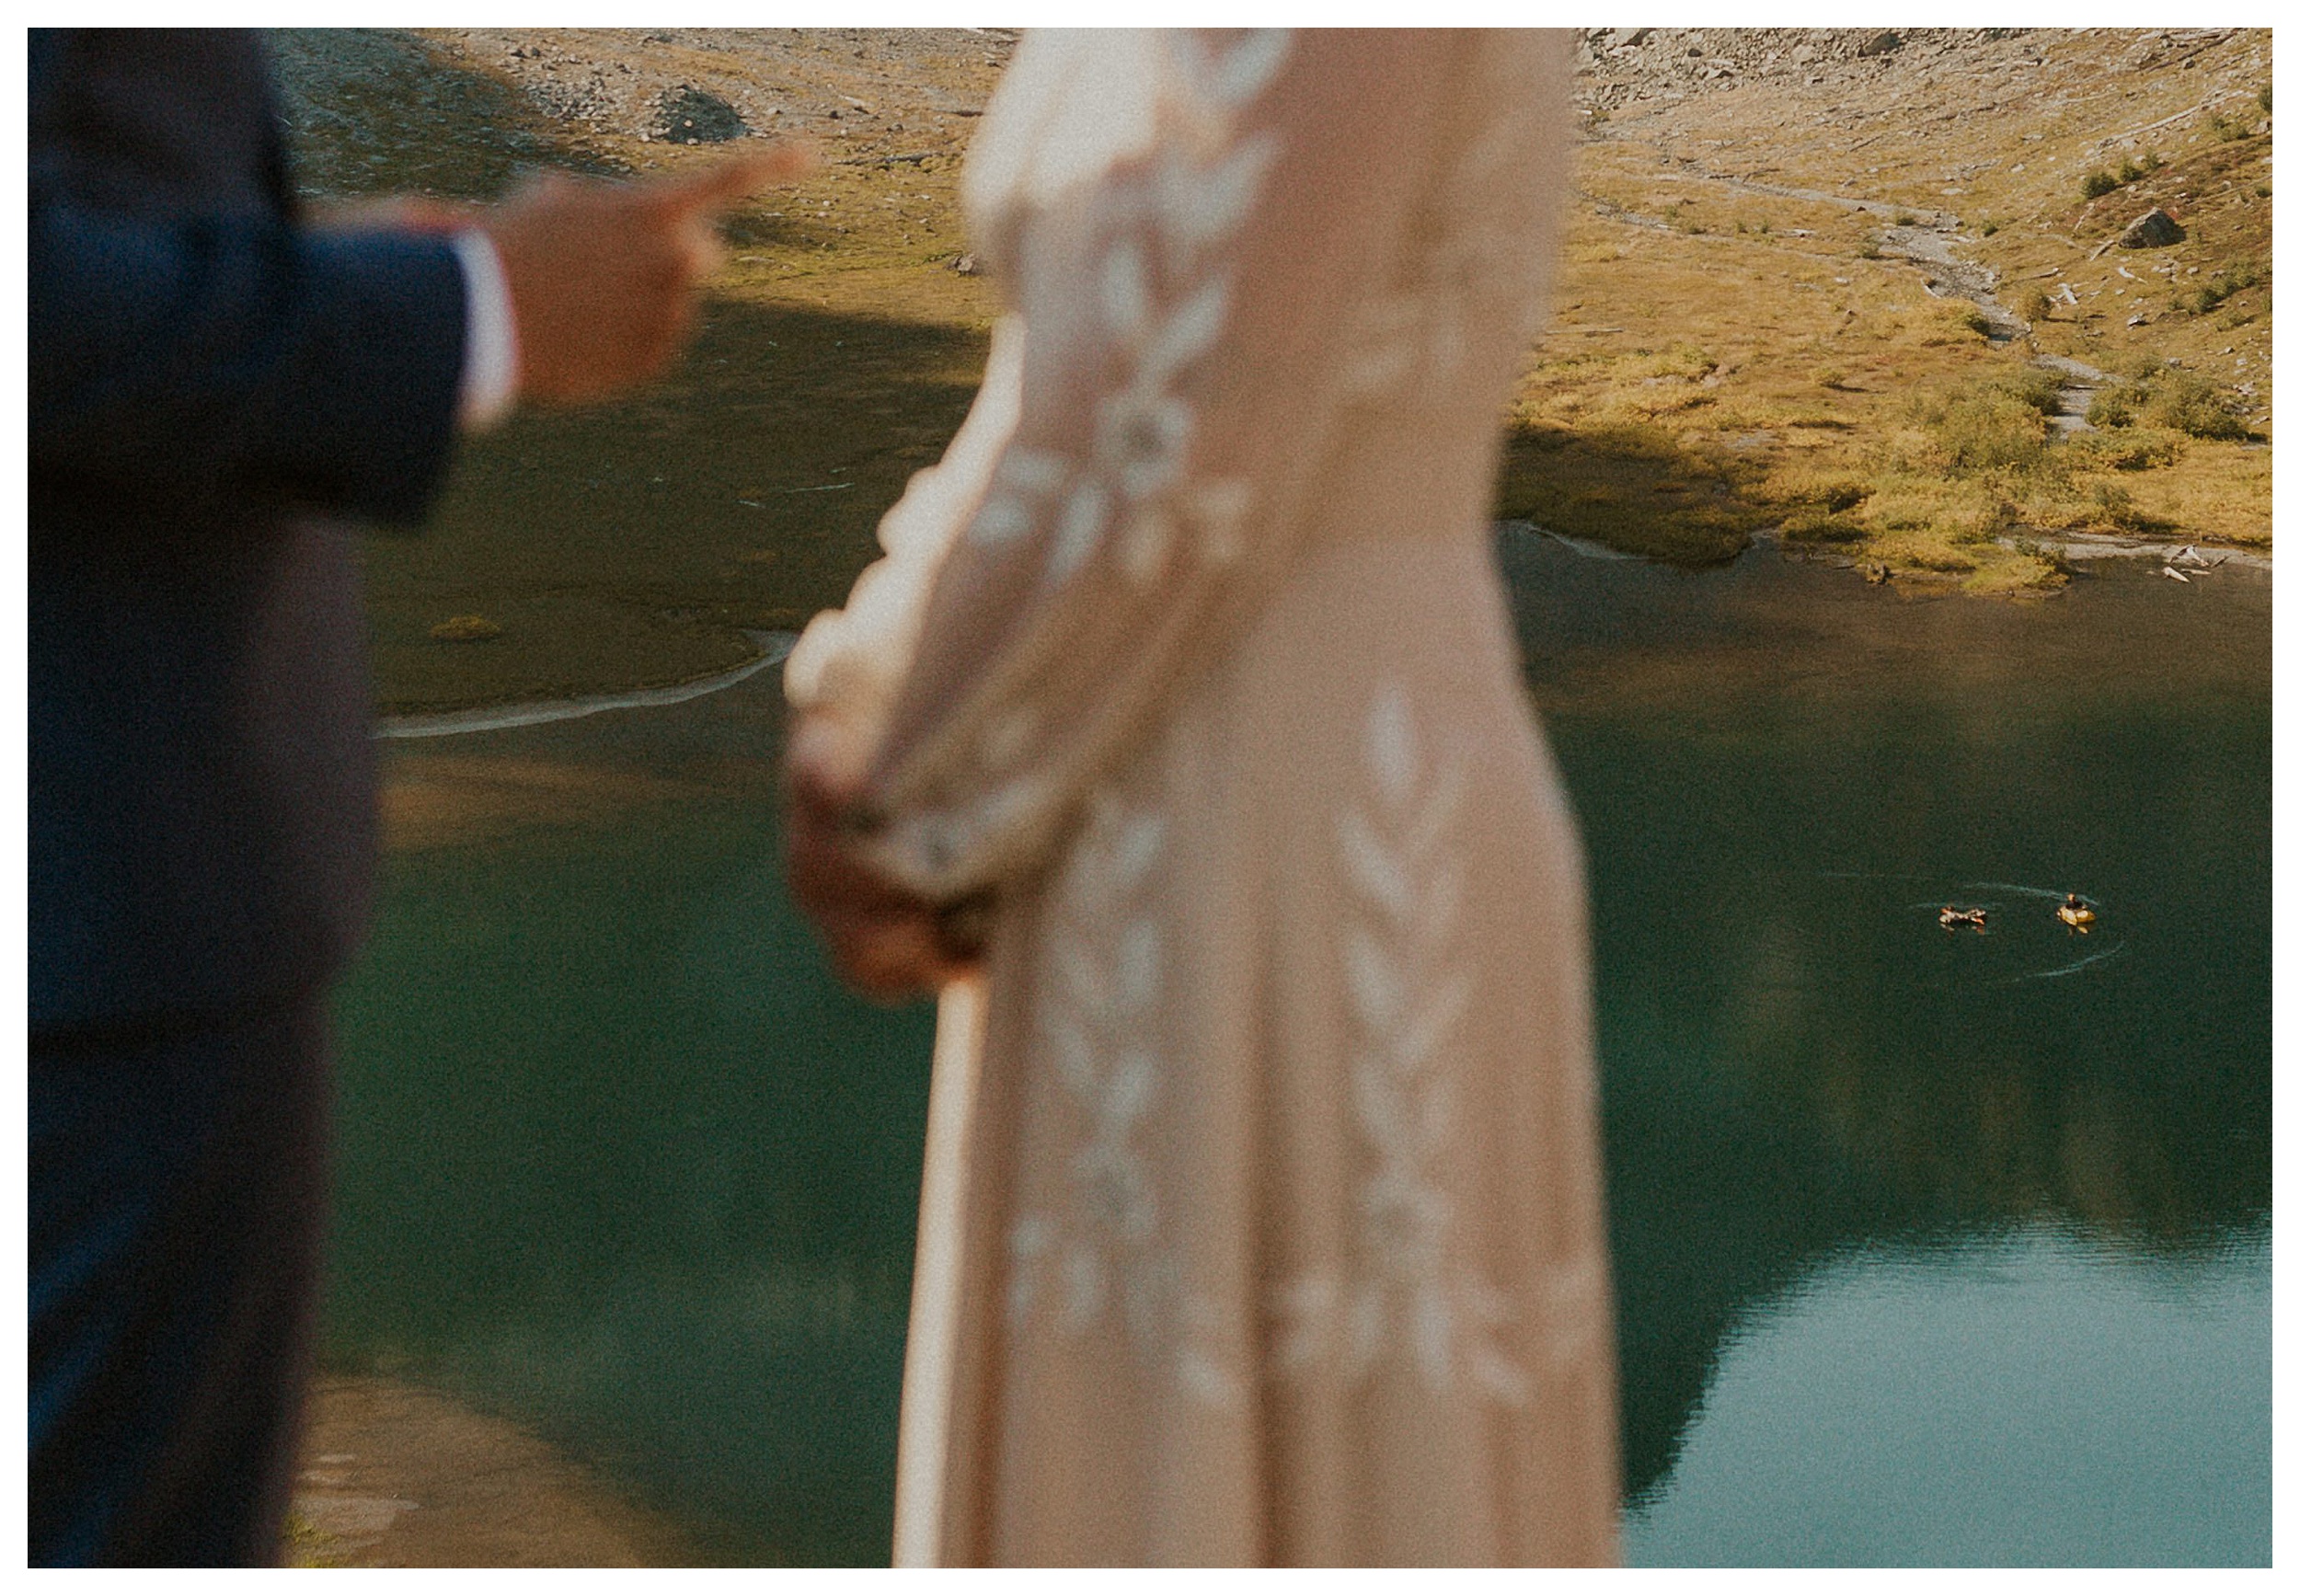 bride and groom standing together artist point landscape

